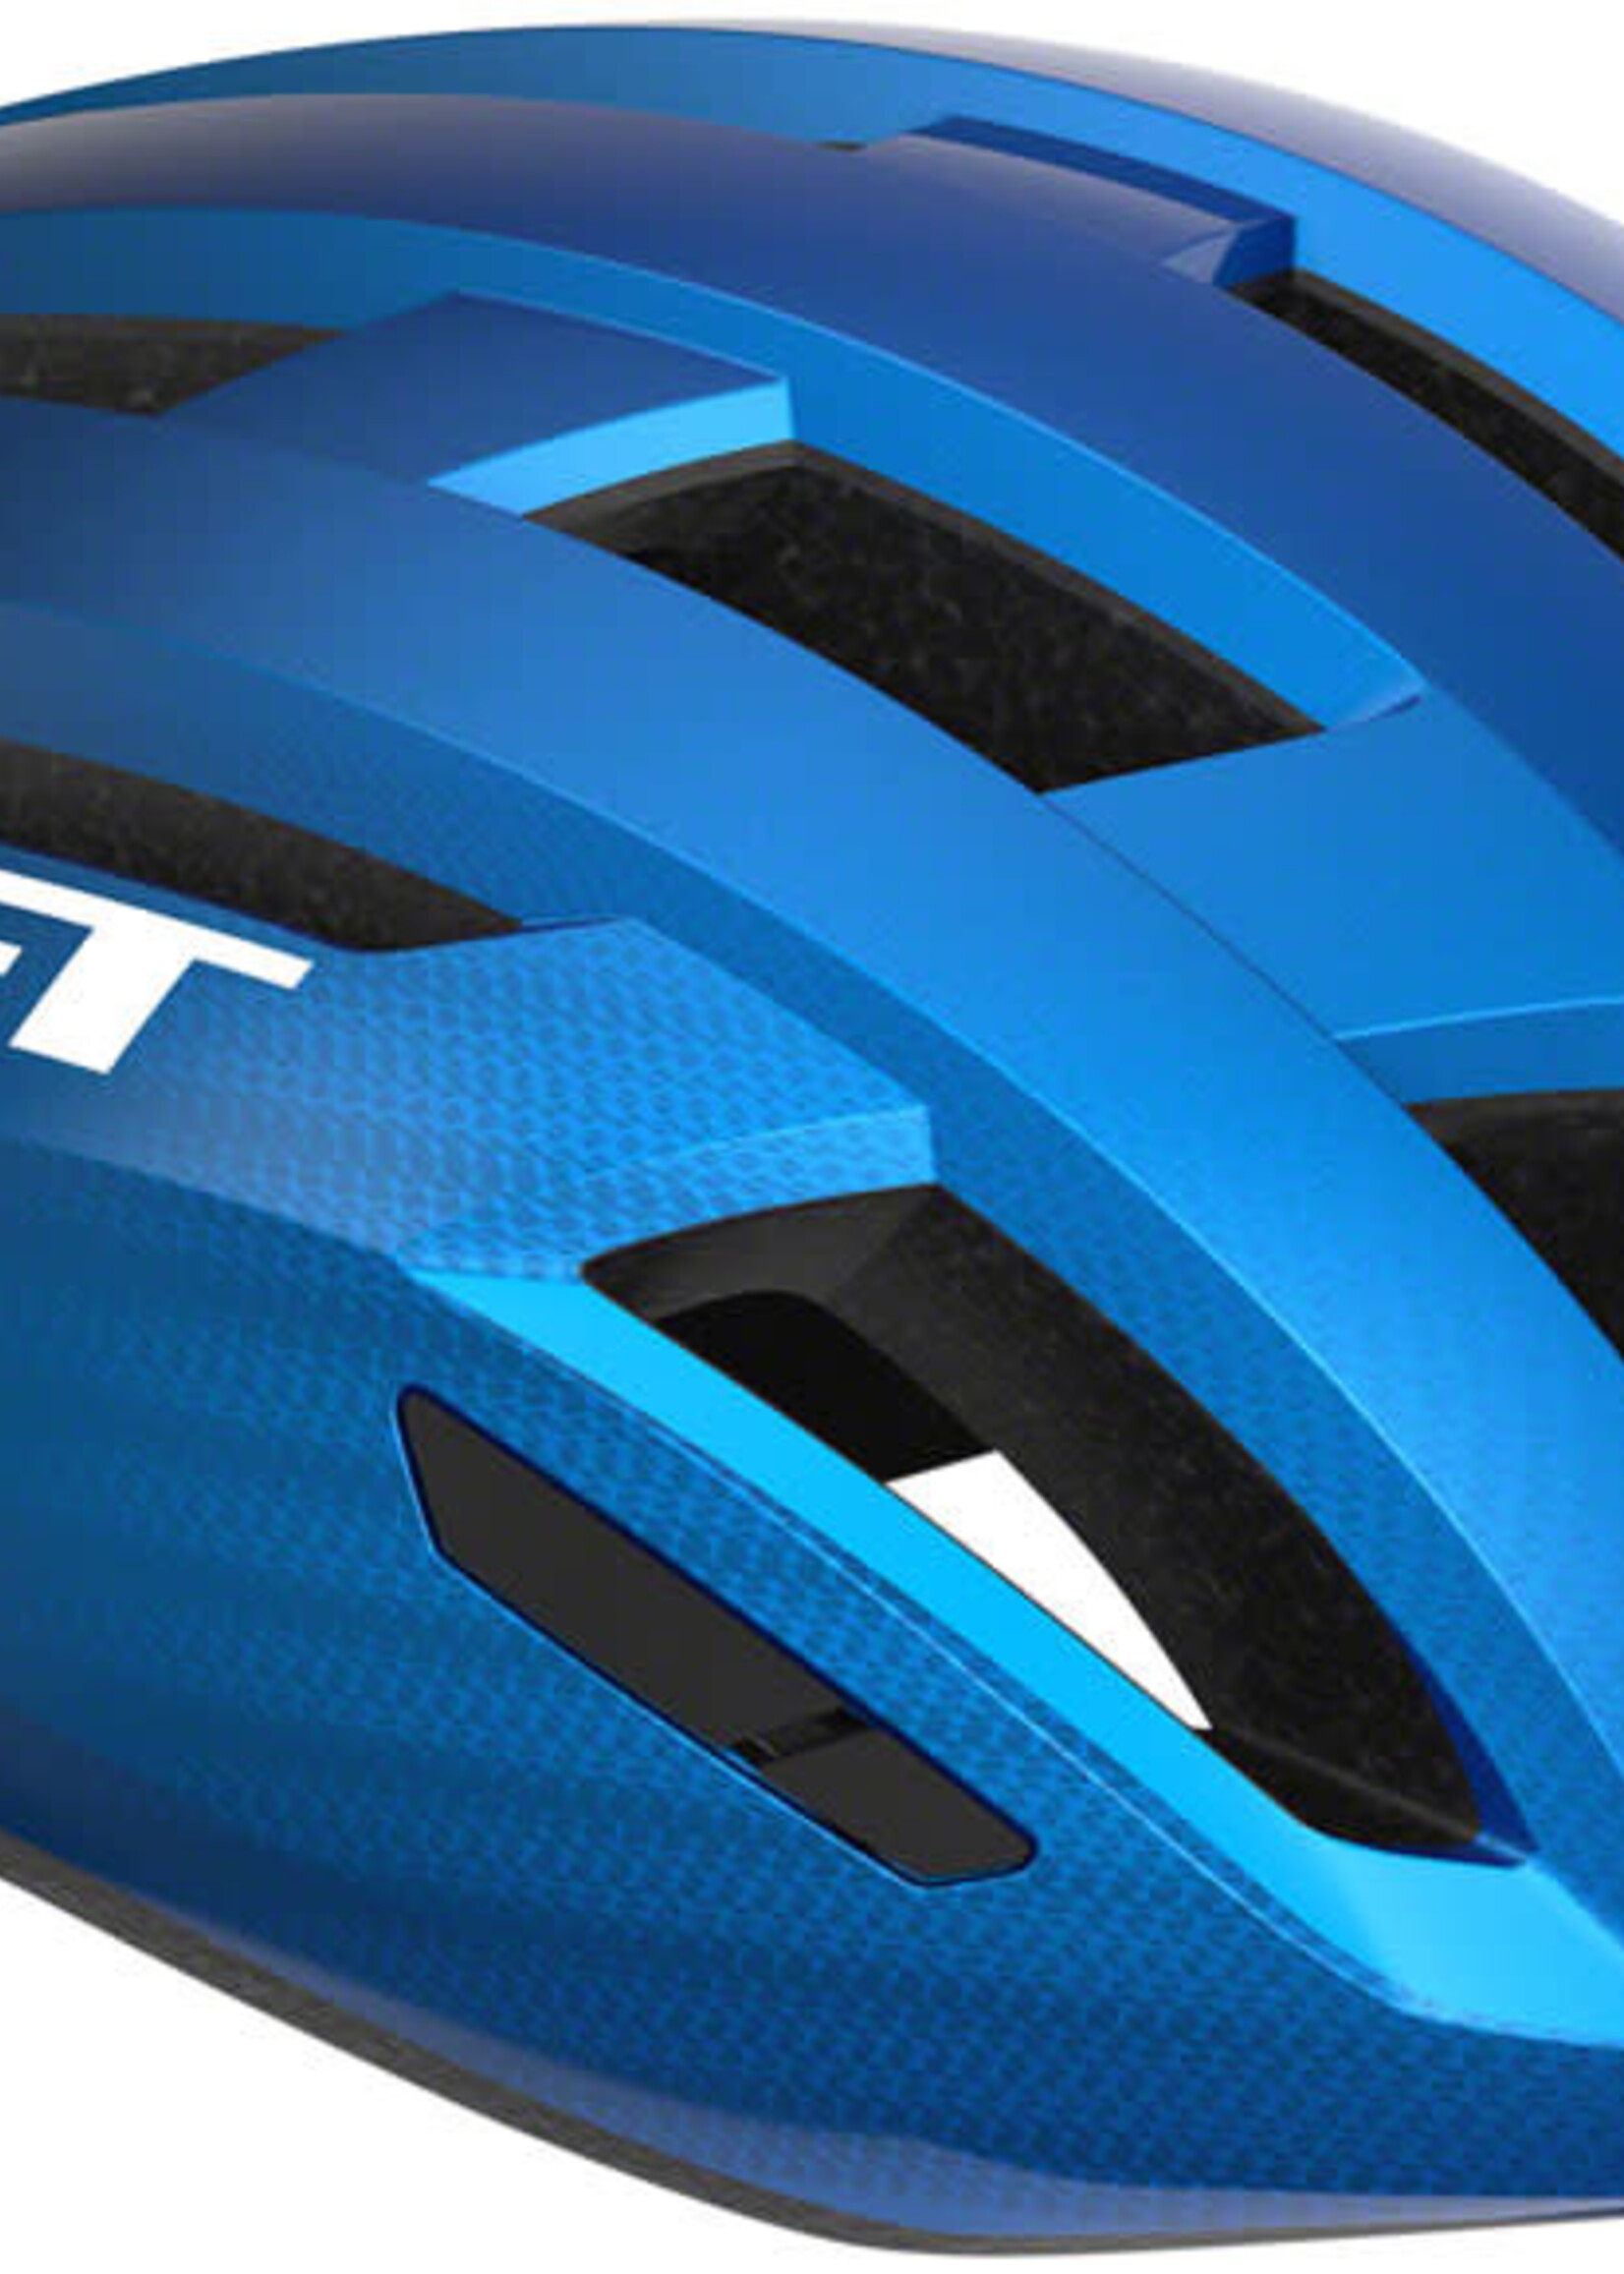 MET Helmets MET Vinci MIPS Helmet - Blue Metallic Glossy Medium